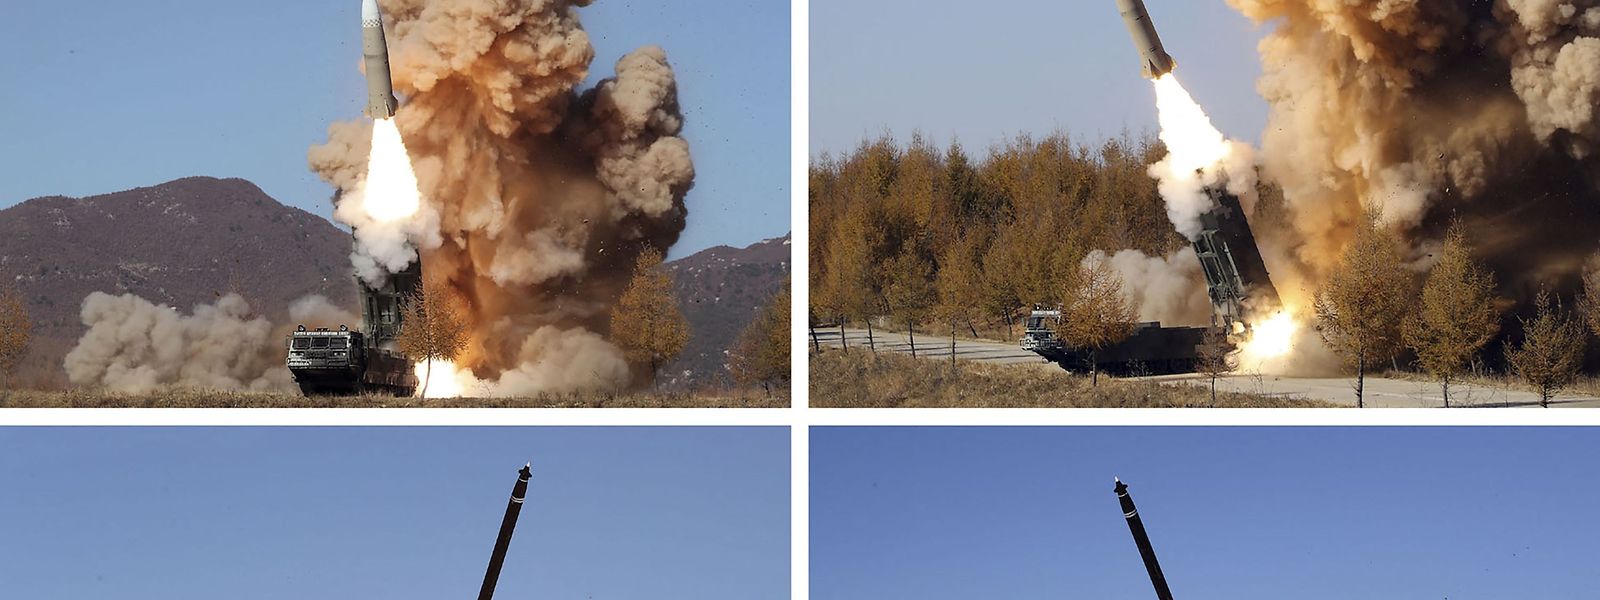 Les images, diffusées par l'agence centrale de Corée du Nord, des essais balistiques de la Corée du nord.